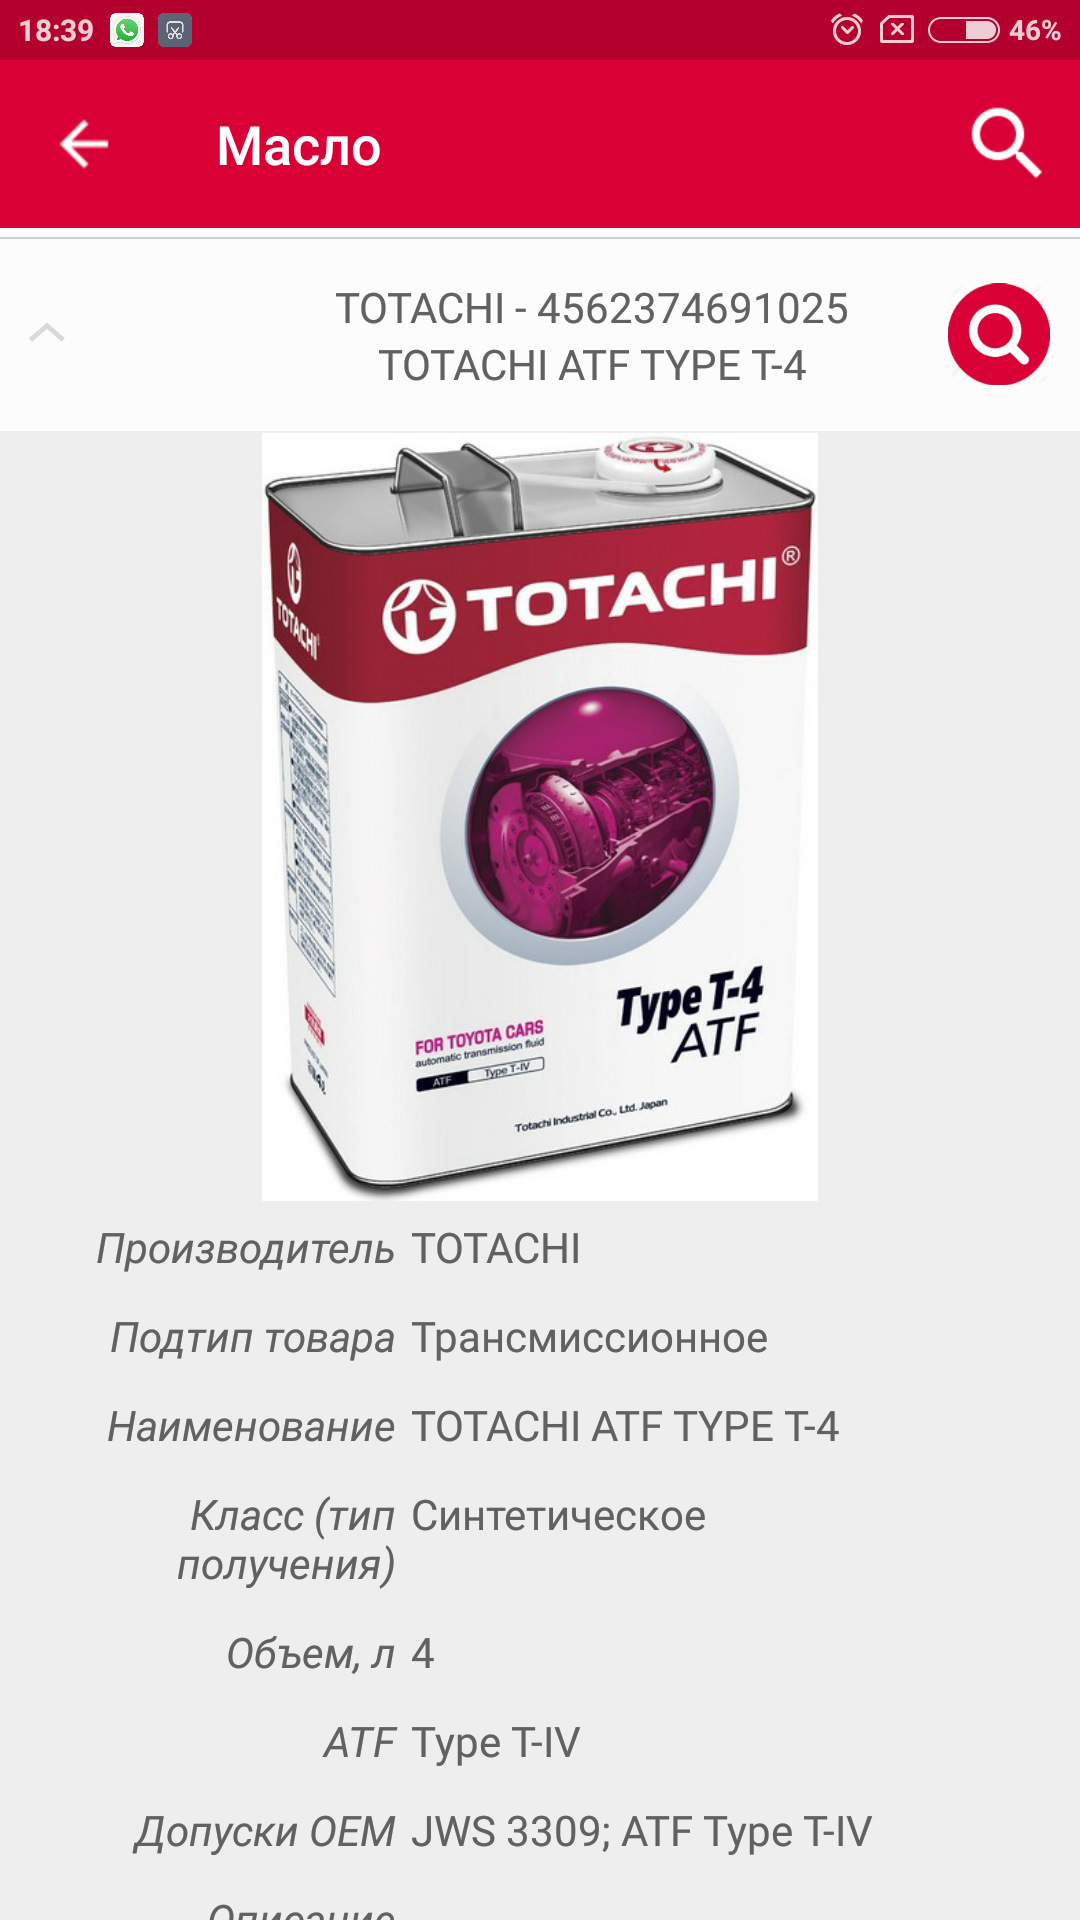 Купить Масло Totachi В Екатеринбурге